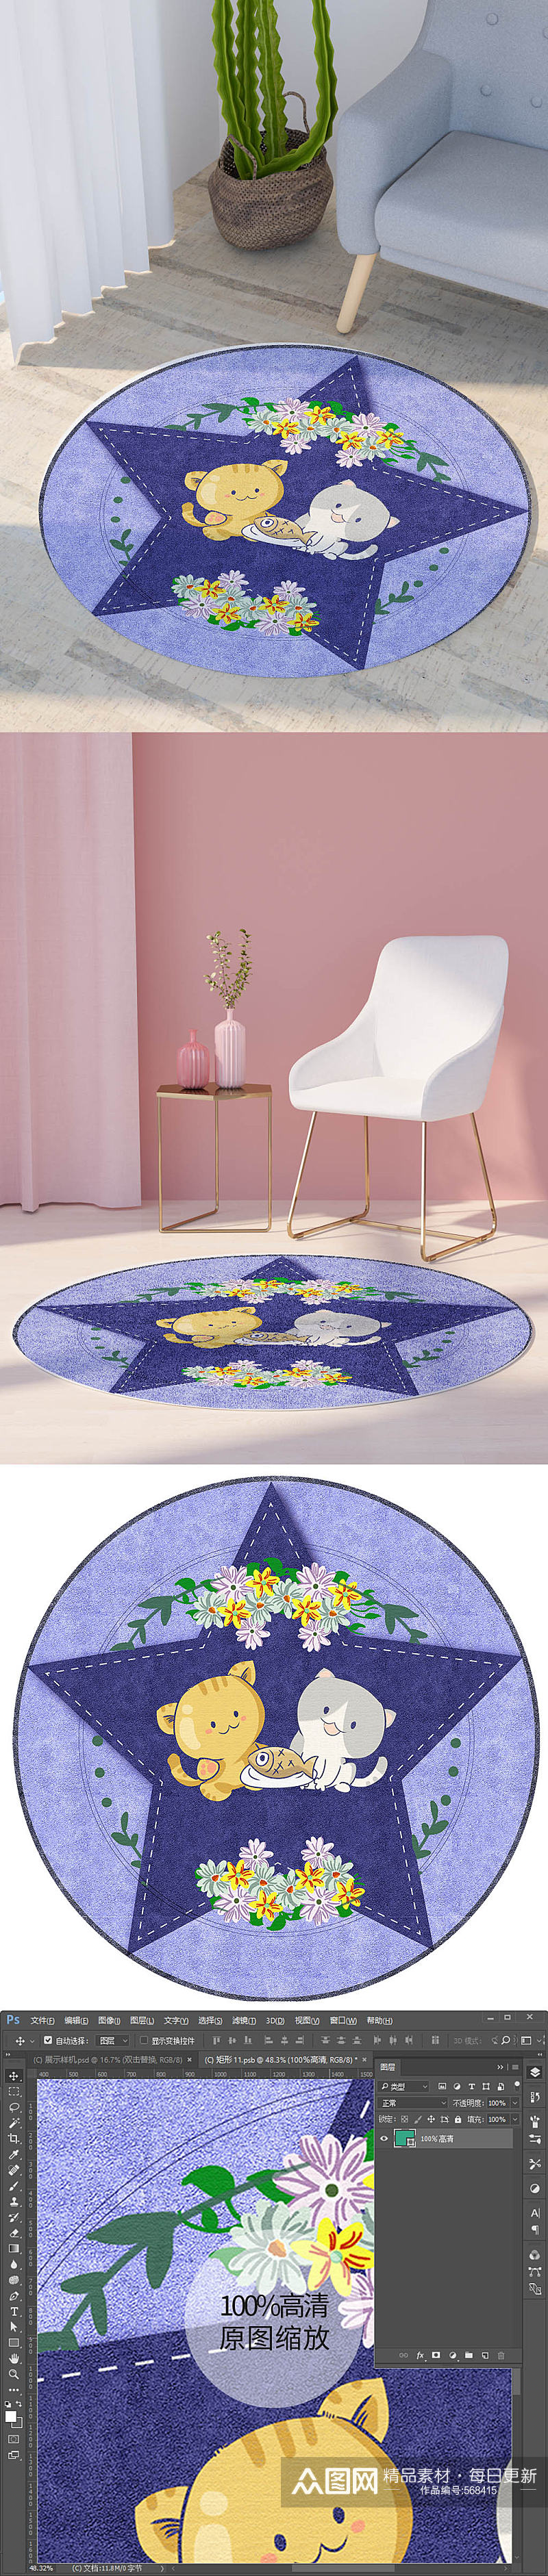 五角星小猫钓鱼花朵可爱卡通圆形地毯印花图素材